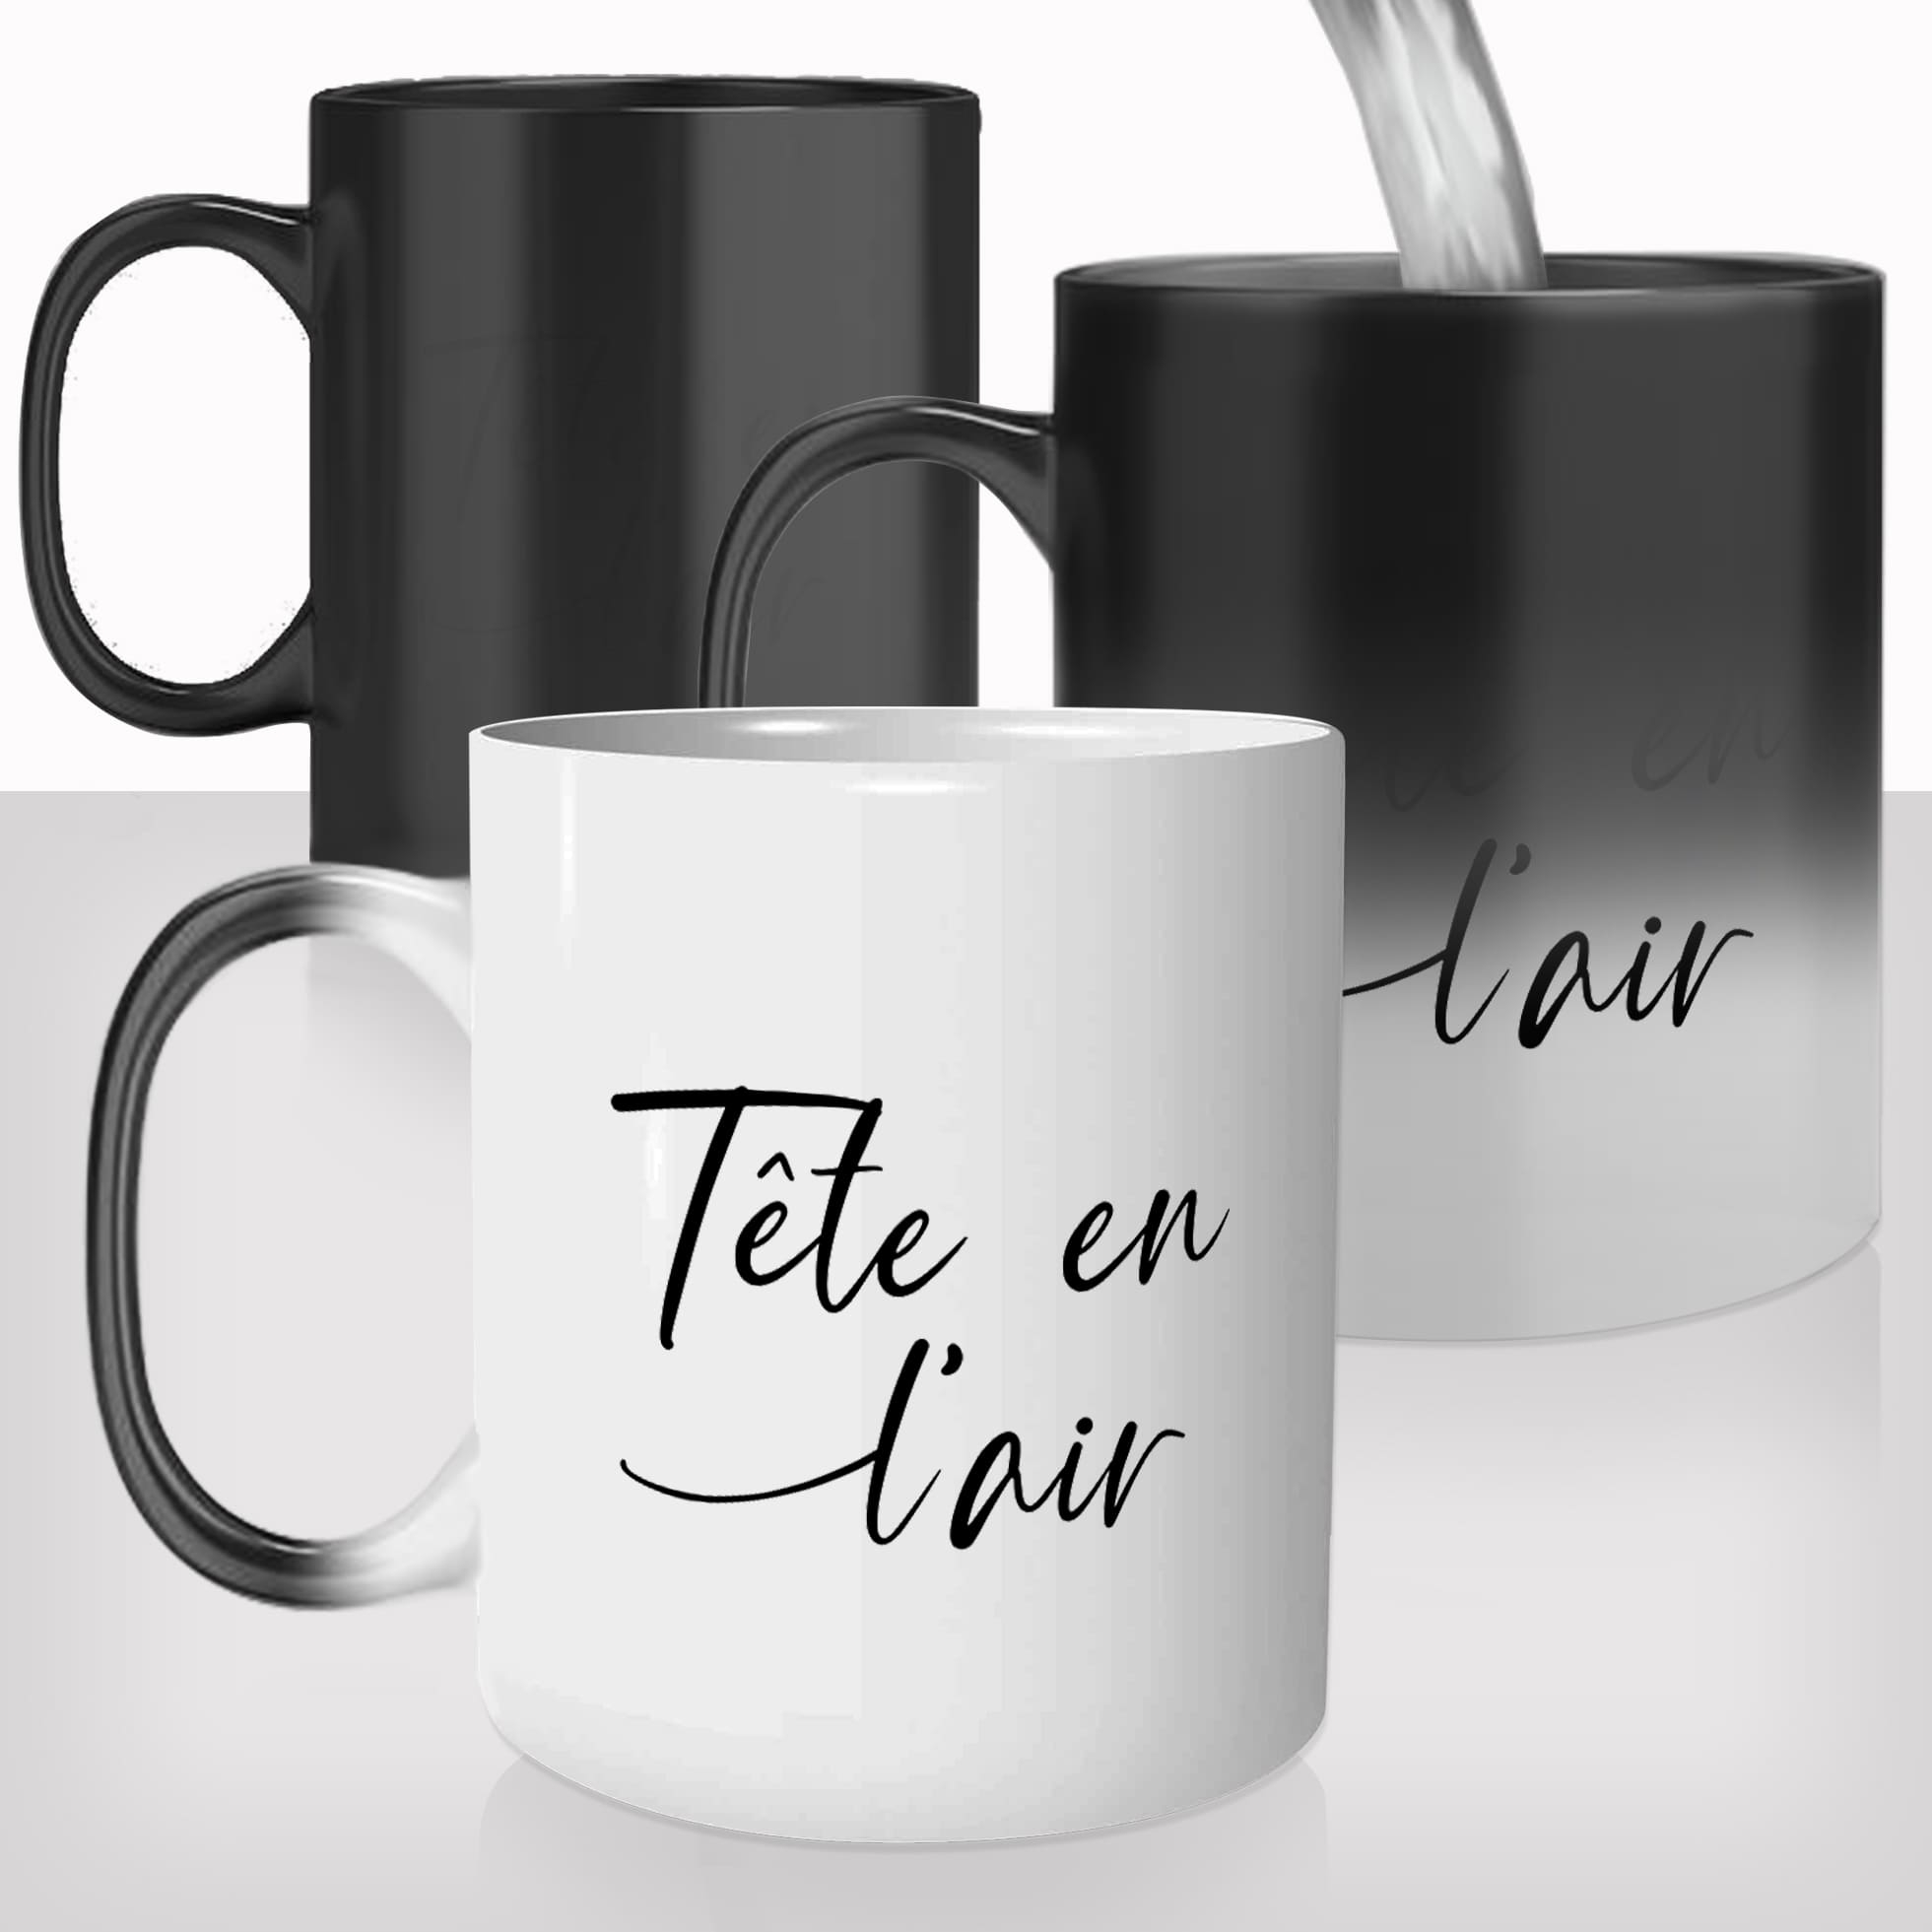 mug-magique-thermoréactif-thermo-personnalisé-citation-francaise-la-tete-en-l'air-défaut-femme-homme-cafe-humour-idée-cadeau-original